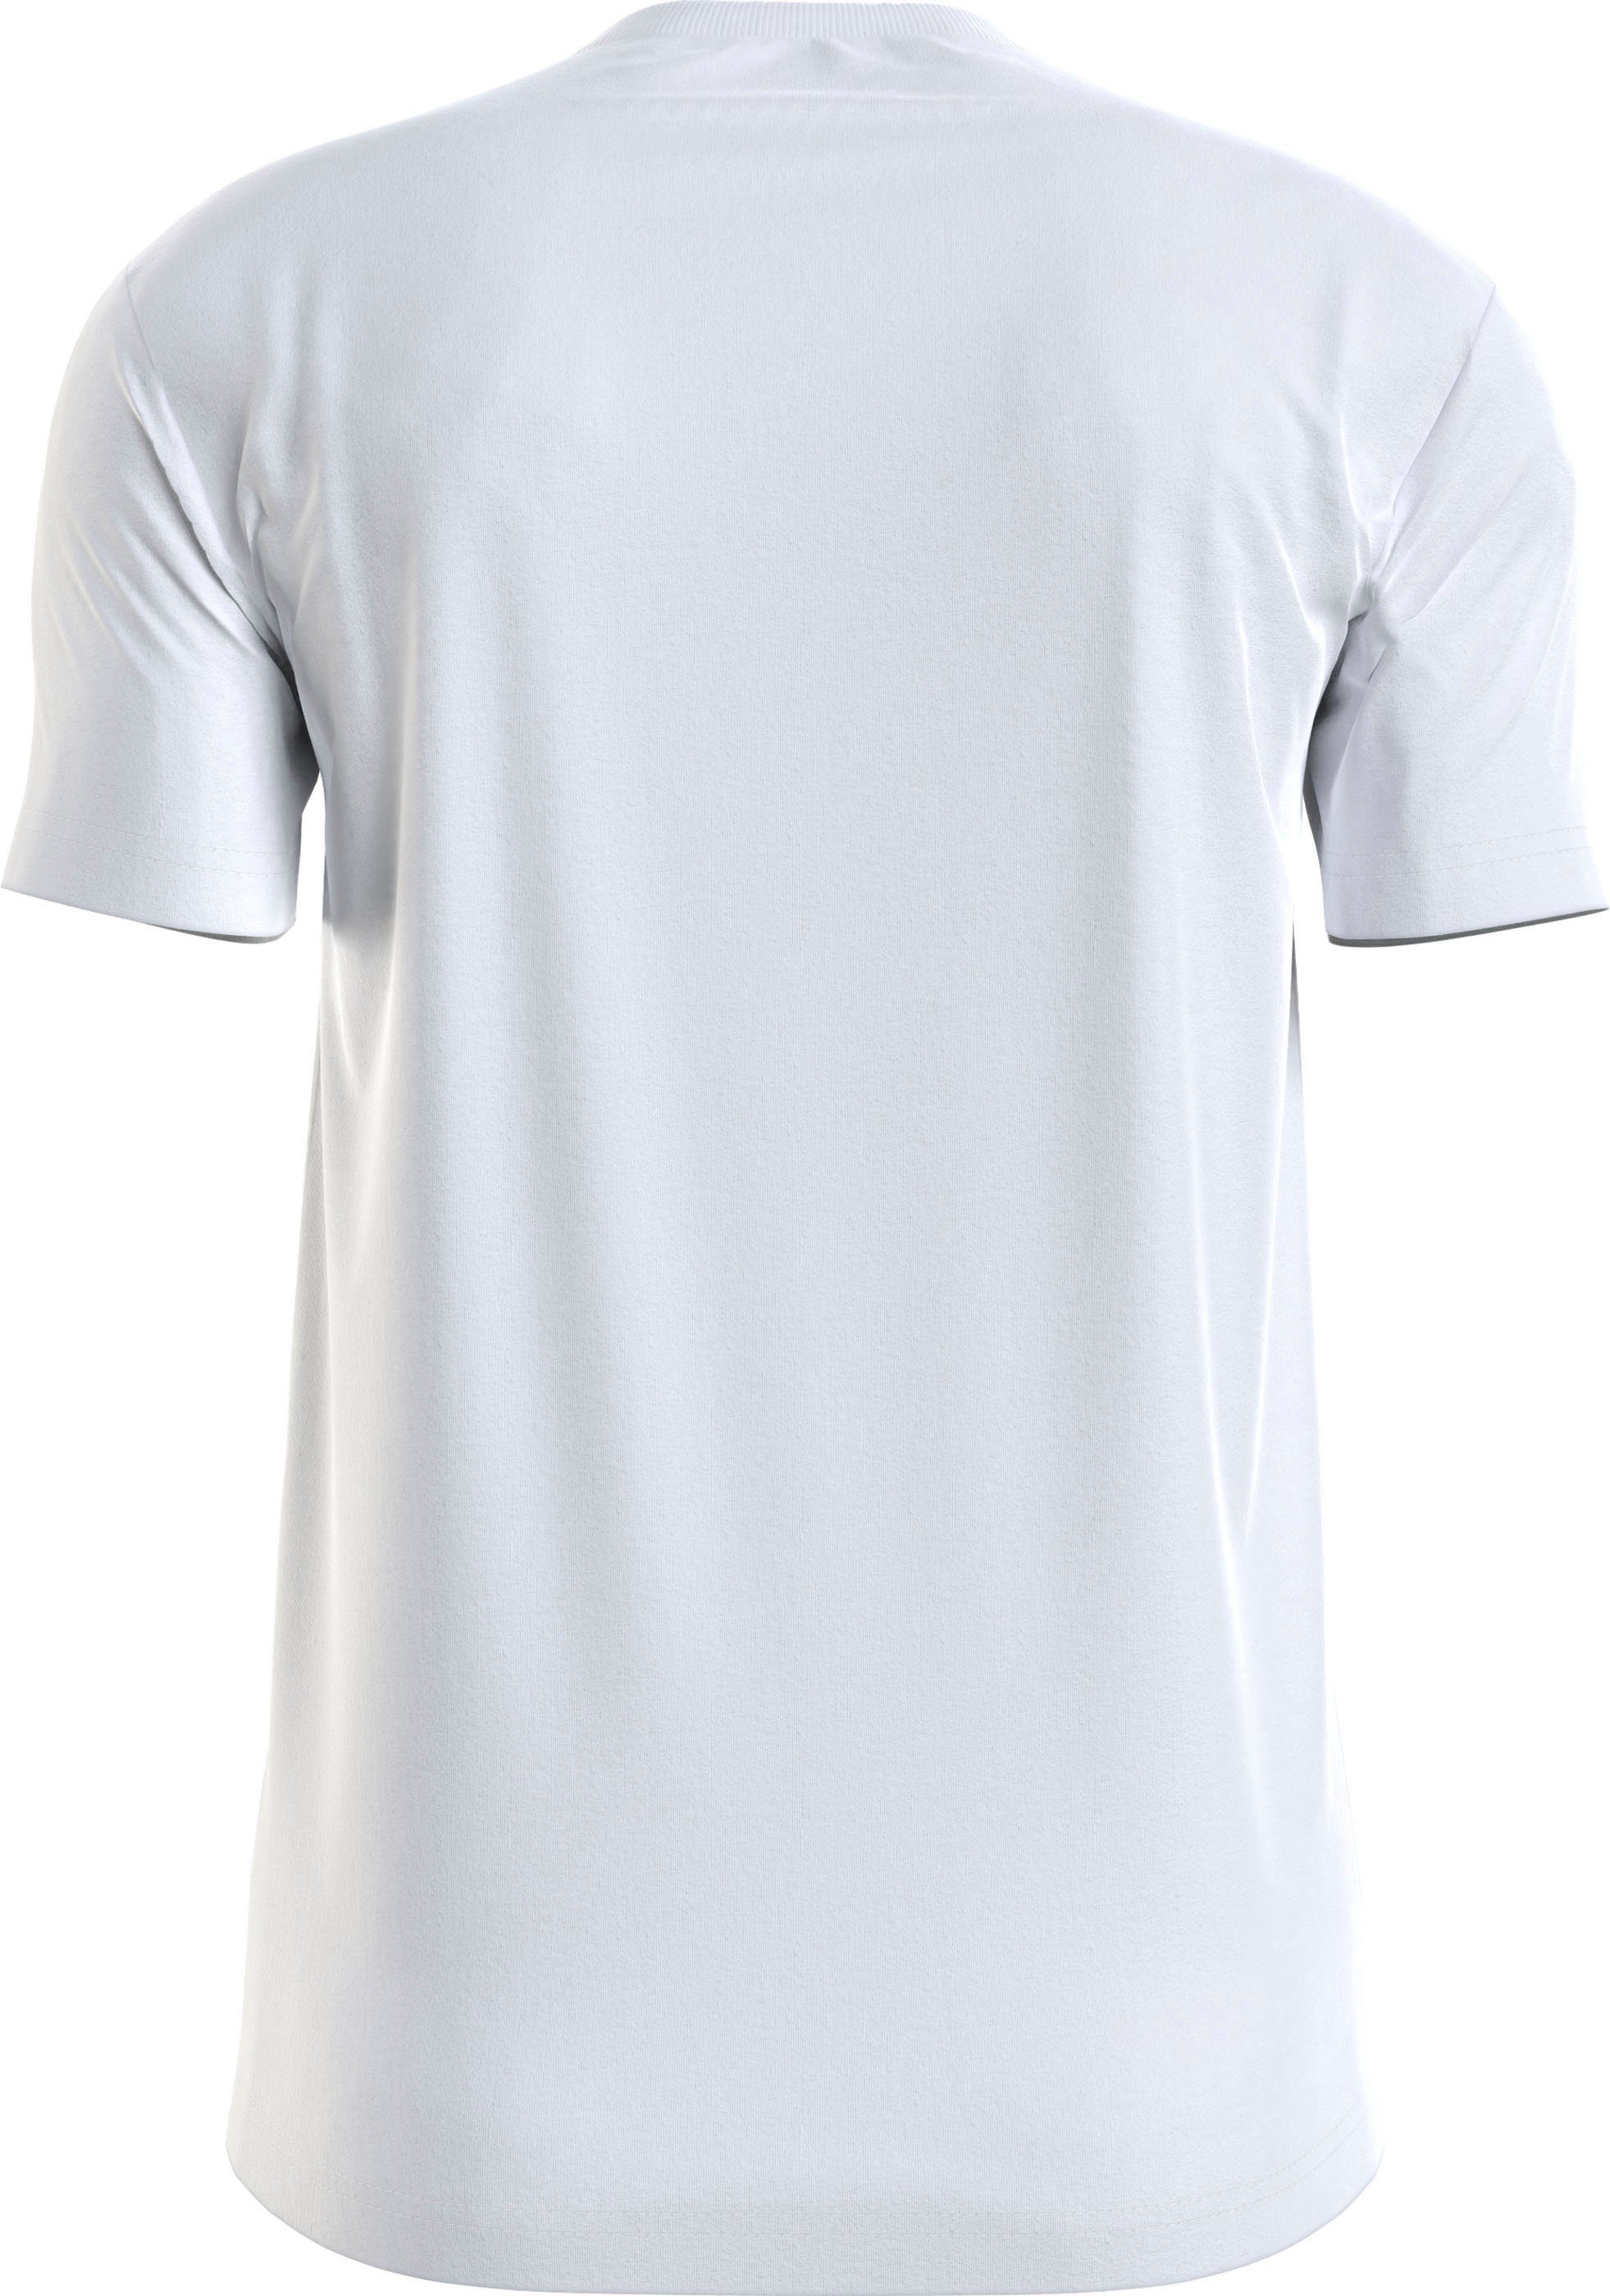 Jeans Calvin INSTITUTIONAL Bright Klein mit T-Shirt White Klein Logoschriftzug LOGO Calvin